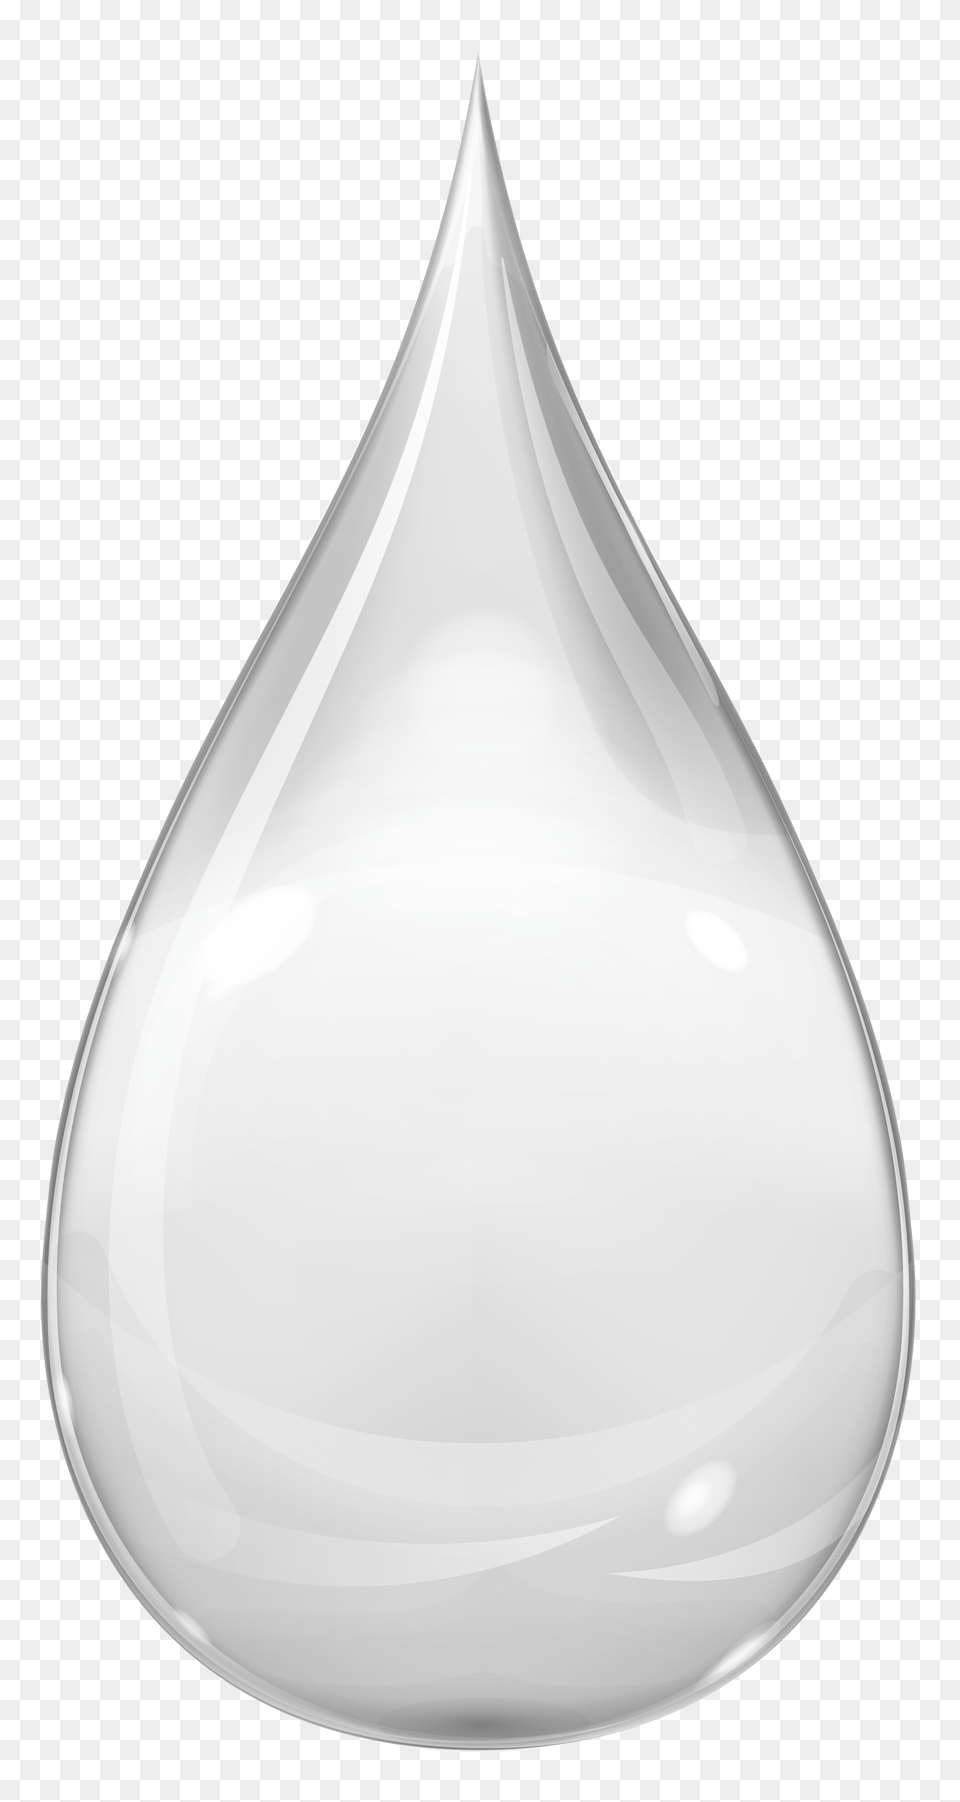 White Drop Transparent, Droplet, Jar, Pottery, Vase Free Png Download